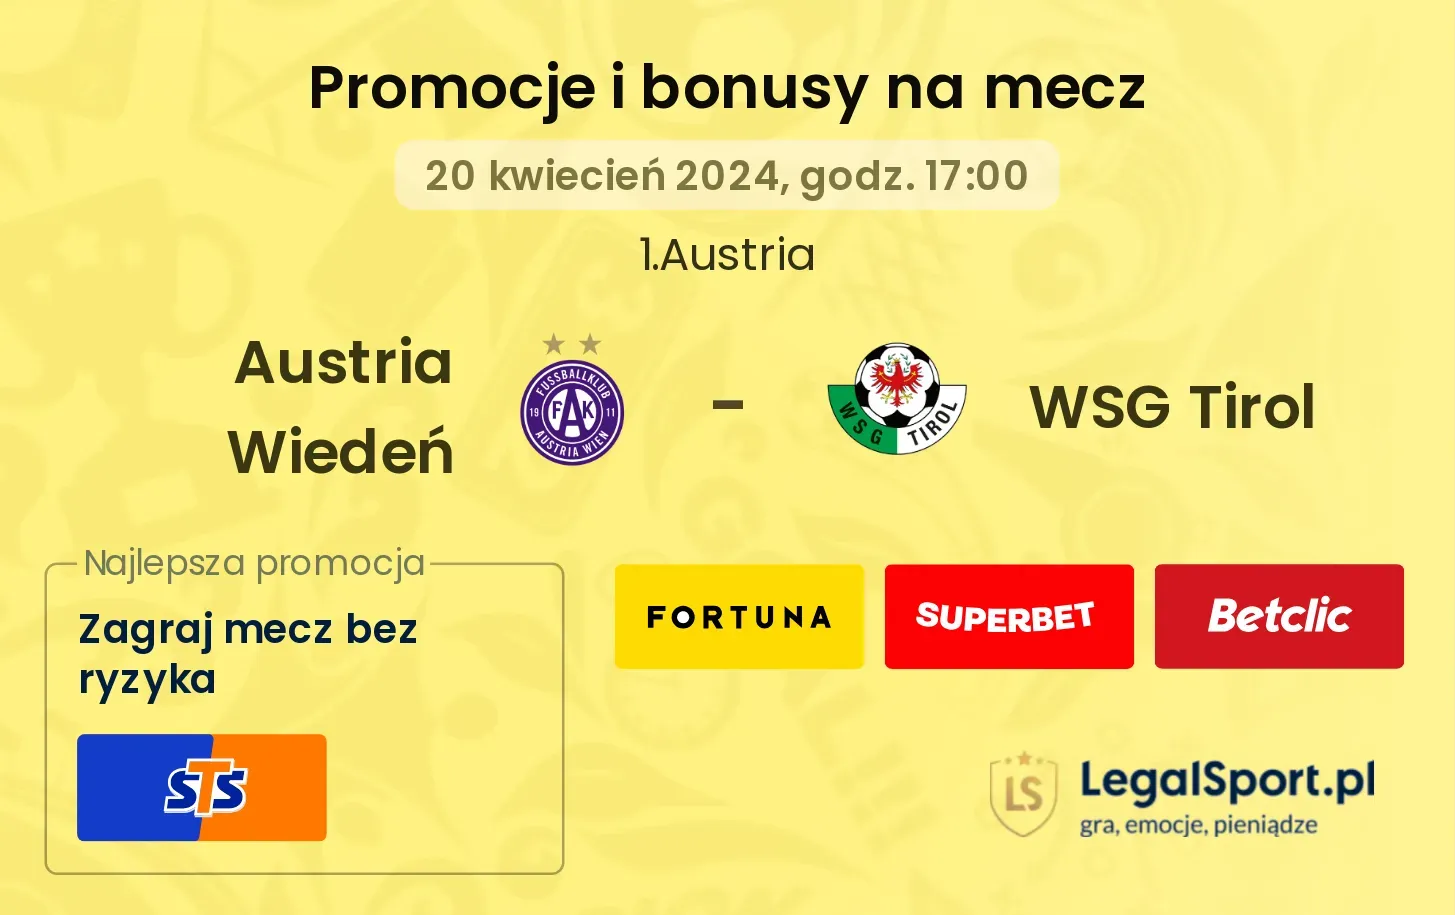 Austria Wiedeń - WSG Tirol promocje bonusy na mecz